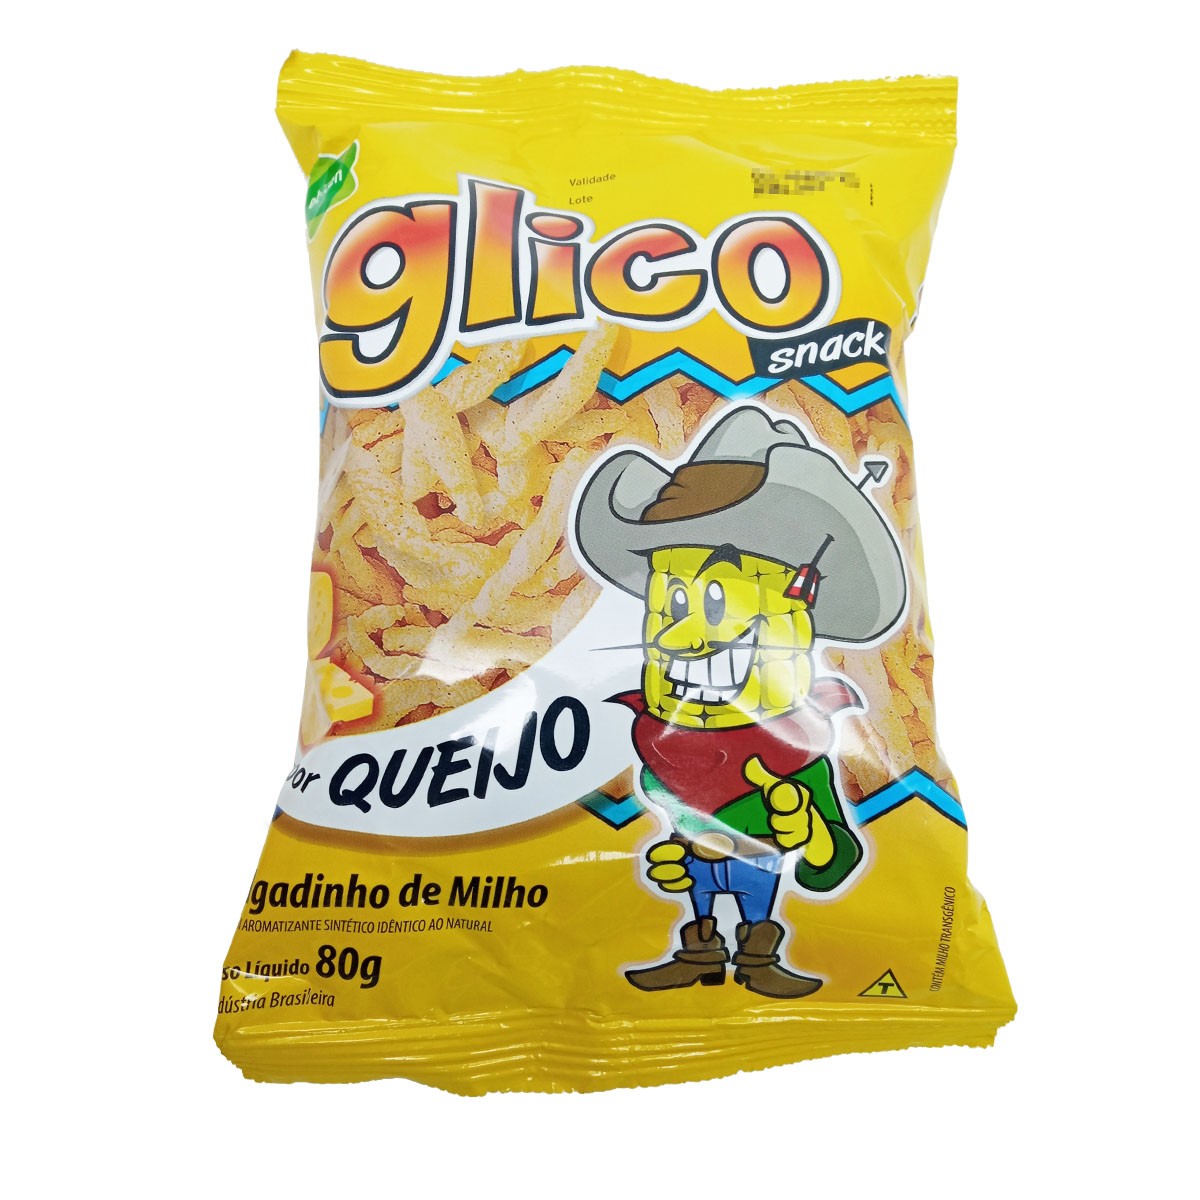 Salgadinho Glico Snack sabor Queijo 80g - Ebicen